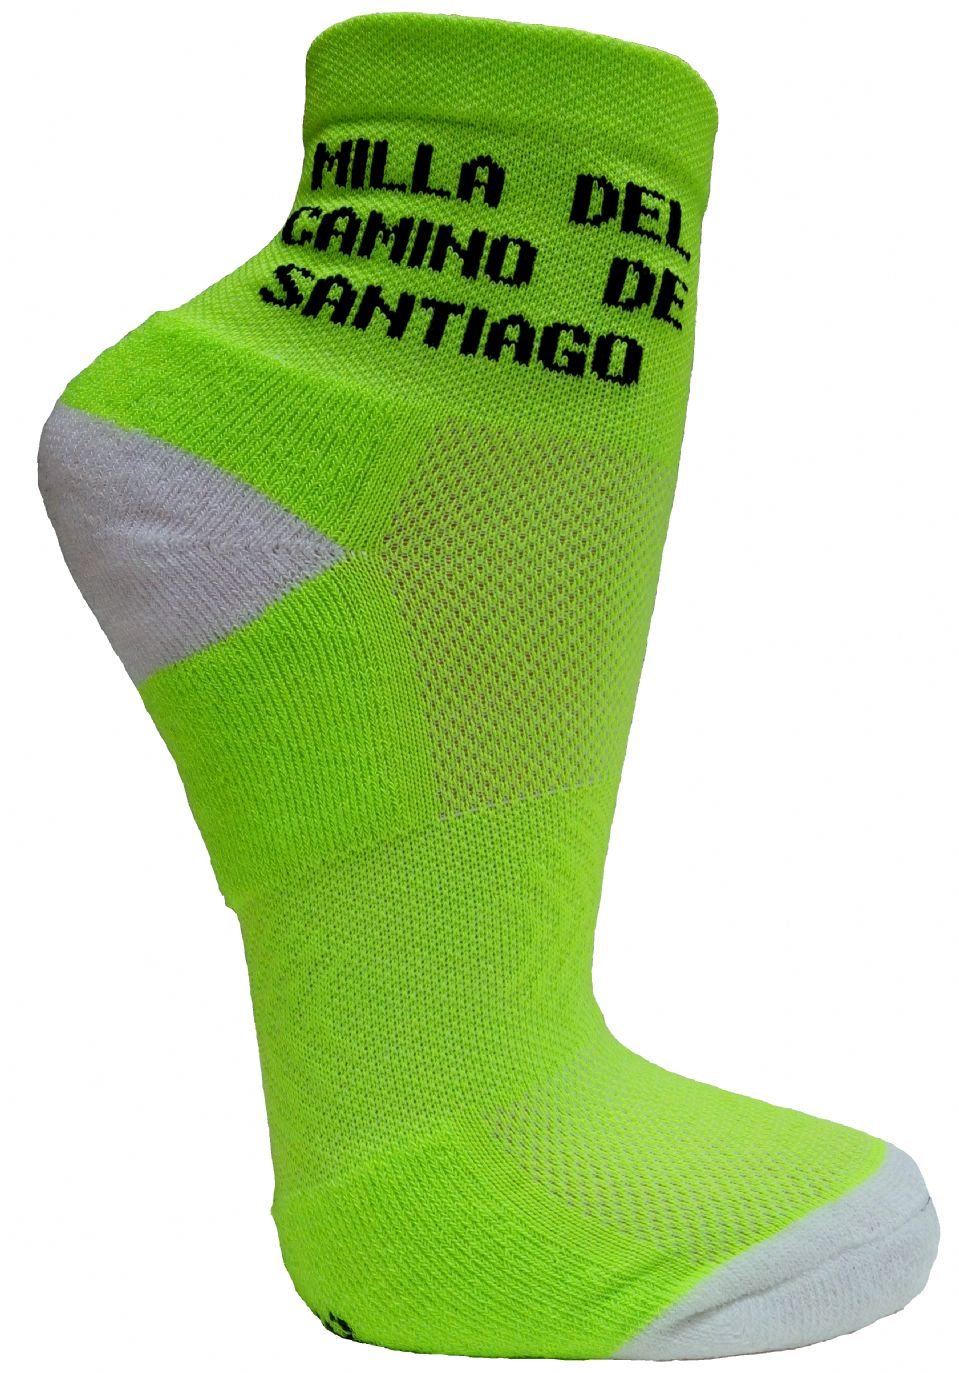 Calcetines personalizados Milla del Camino de Santiago, Calcetines  personalizados